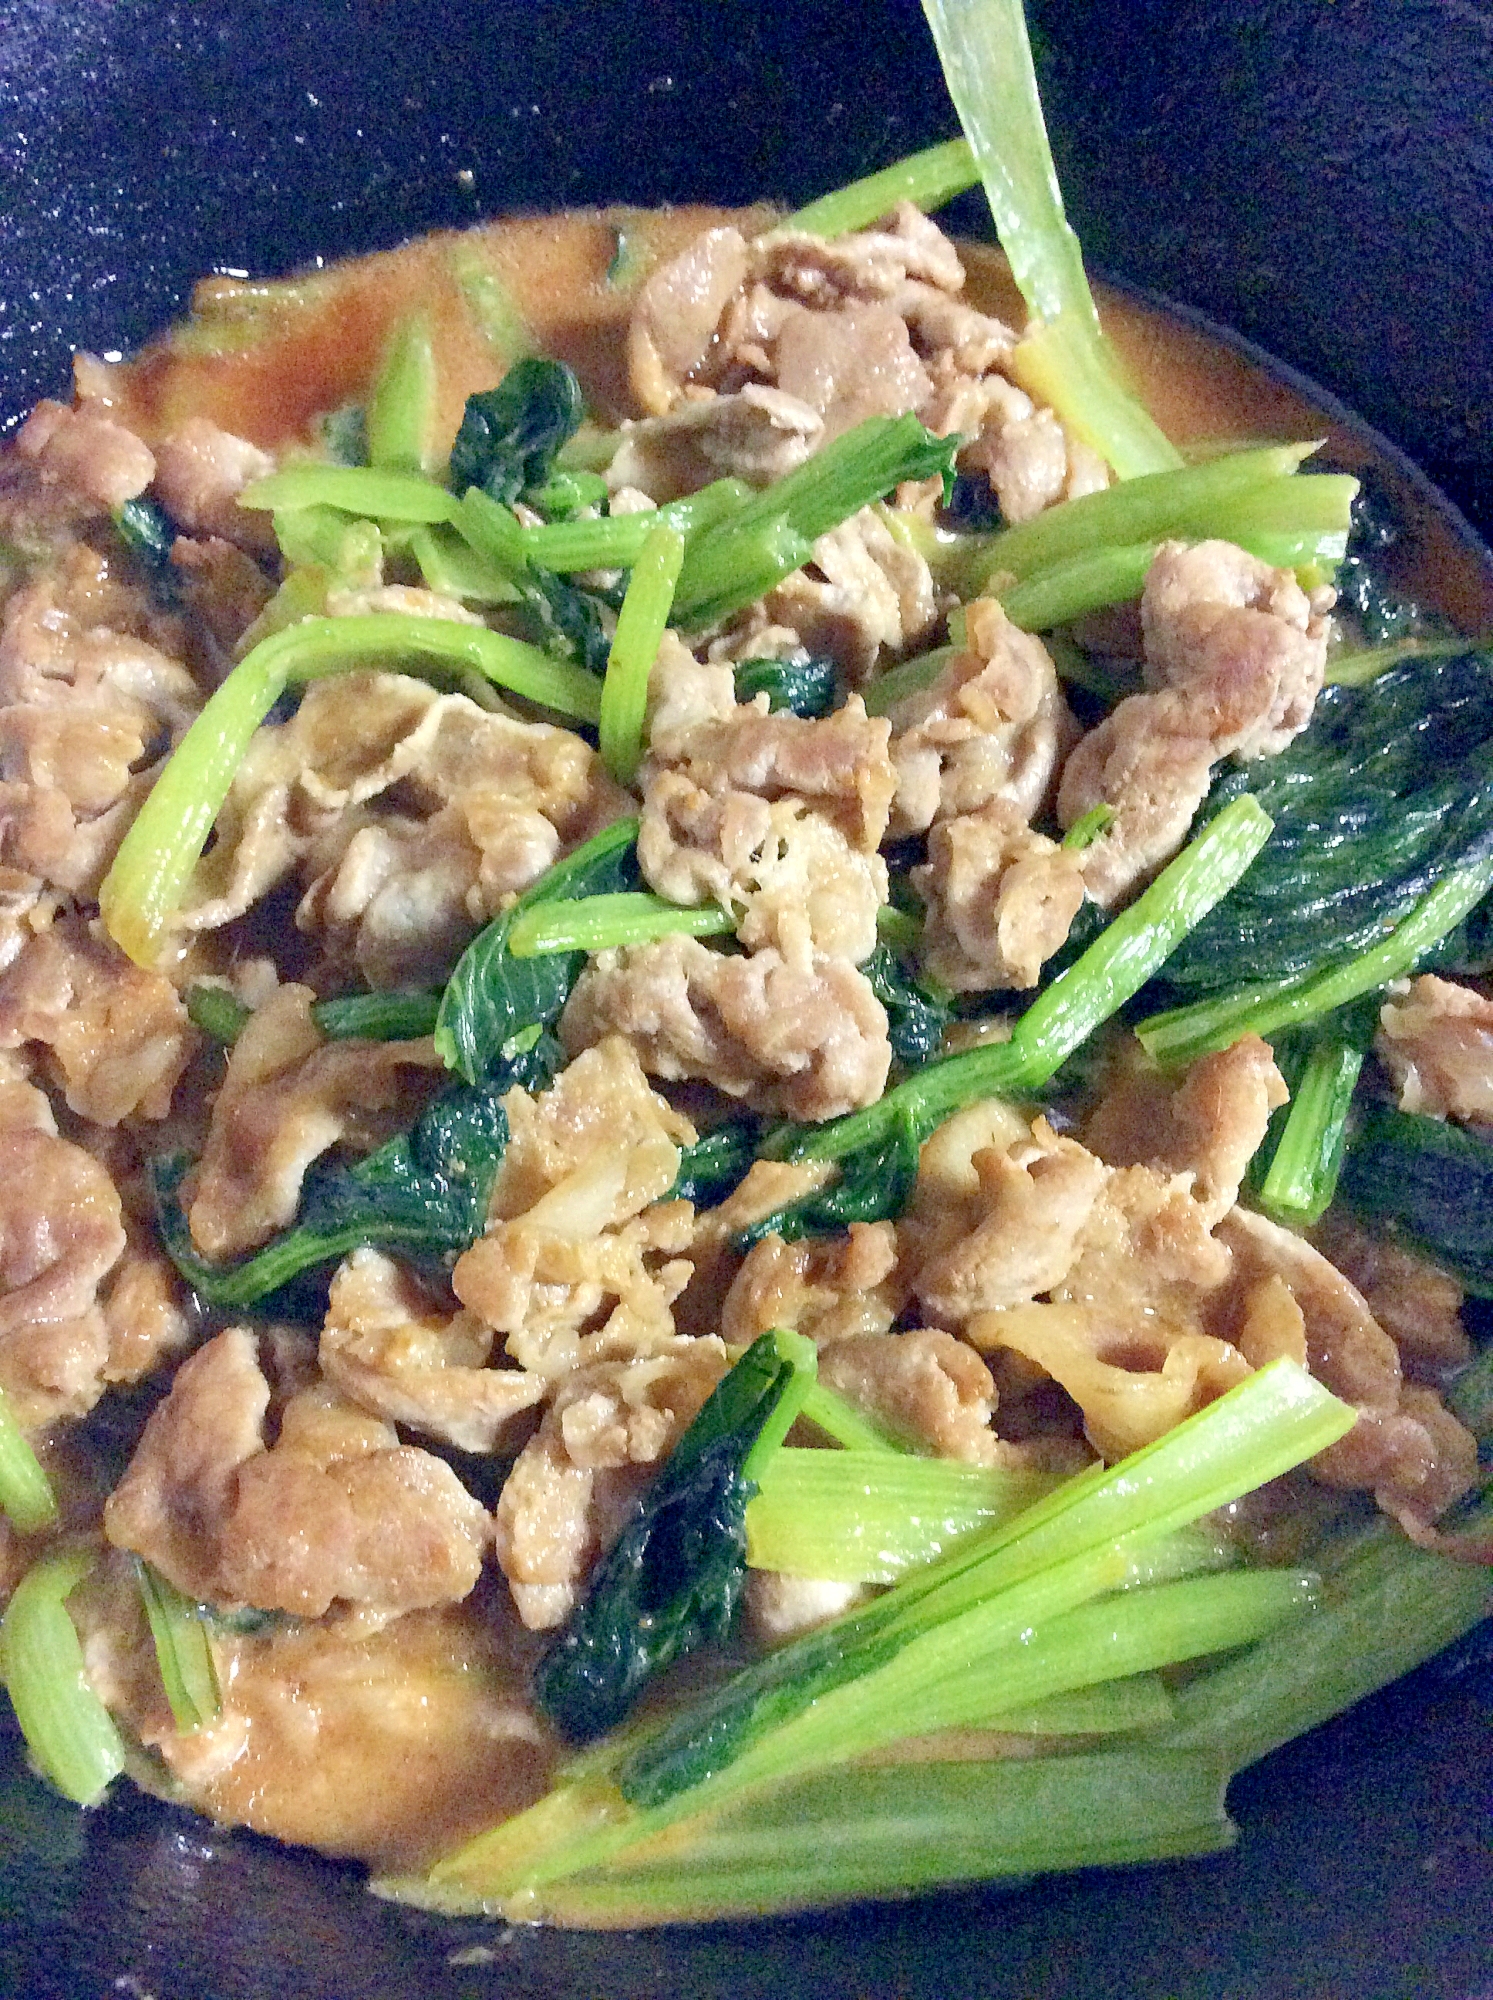 小松菜と豚肉の味噌鍋スープ炒め